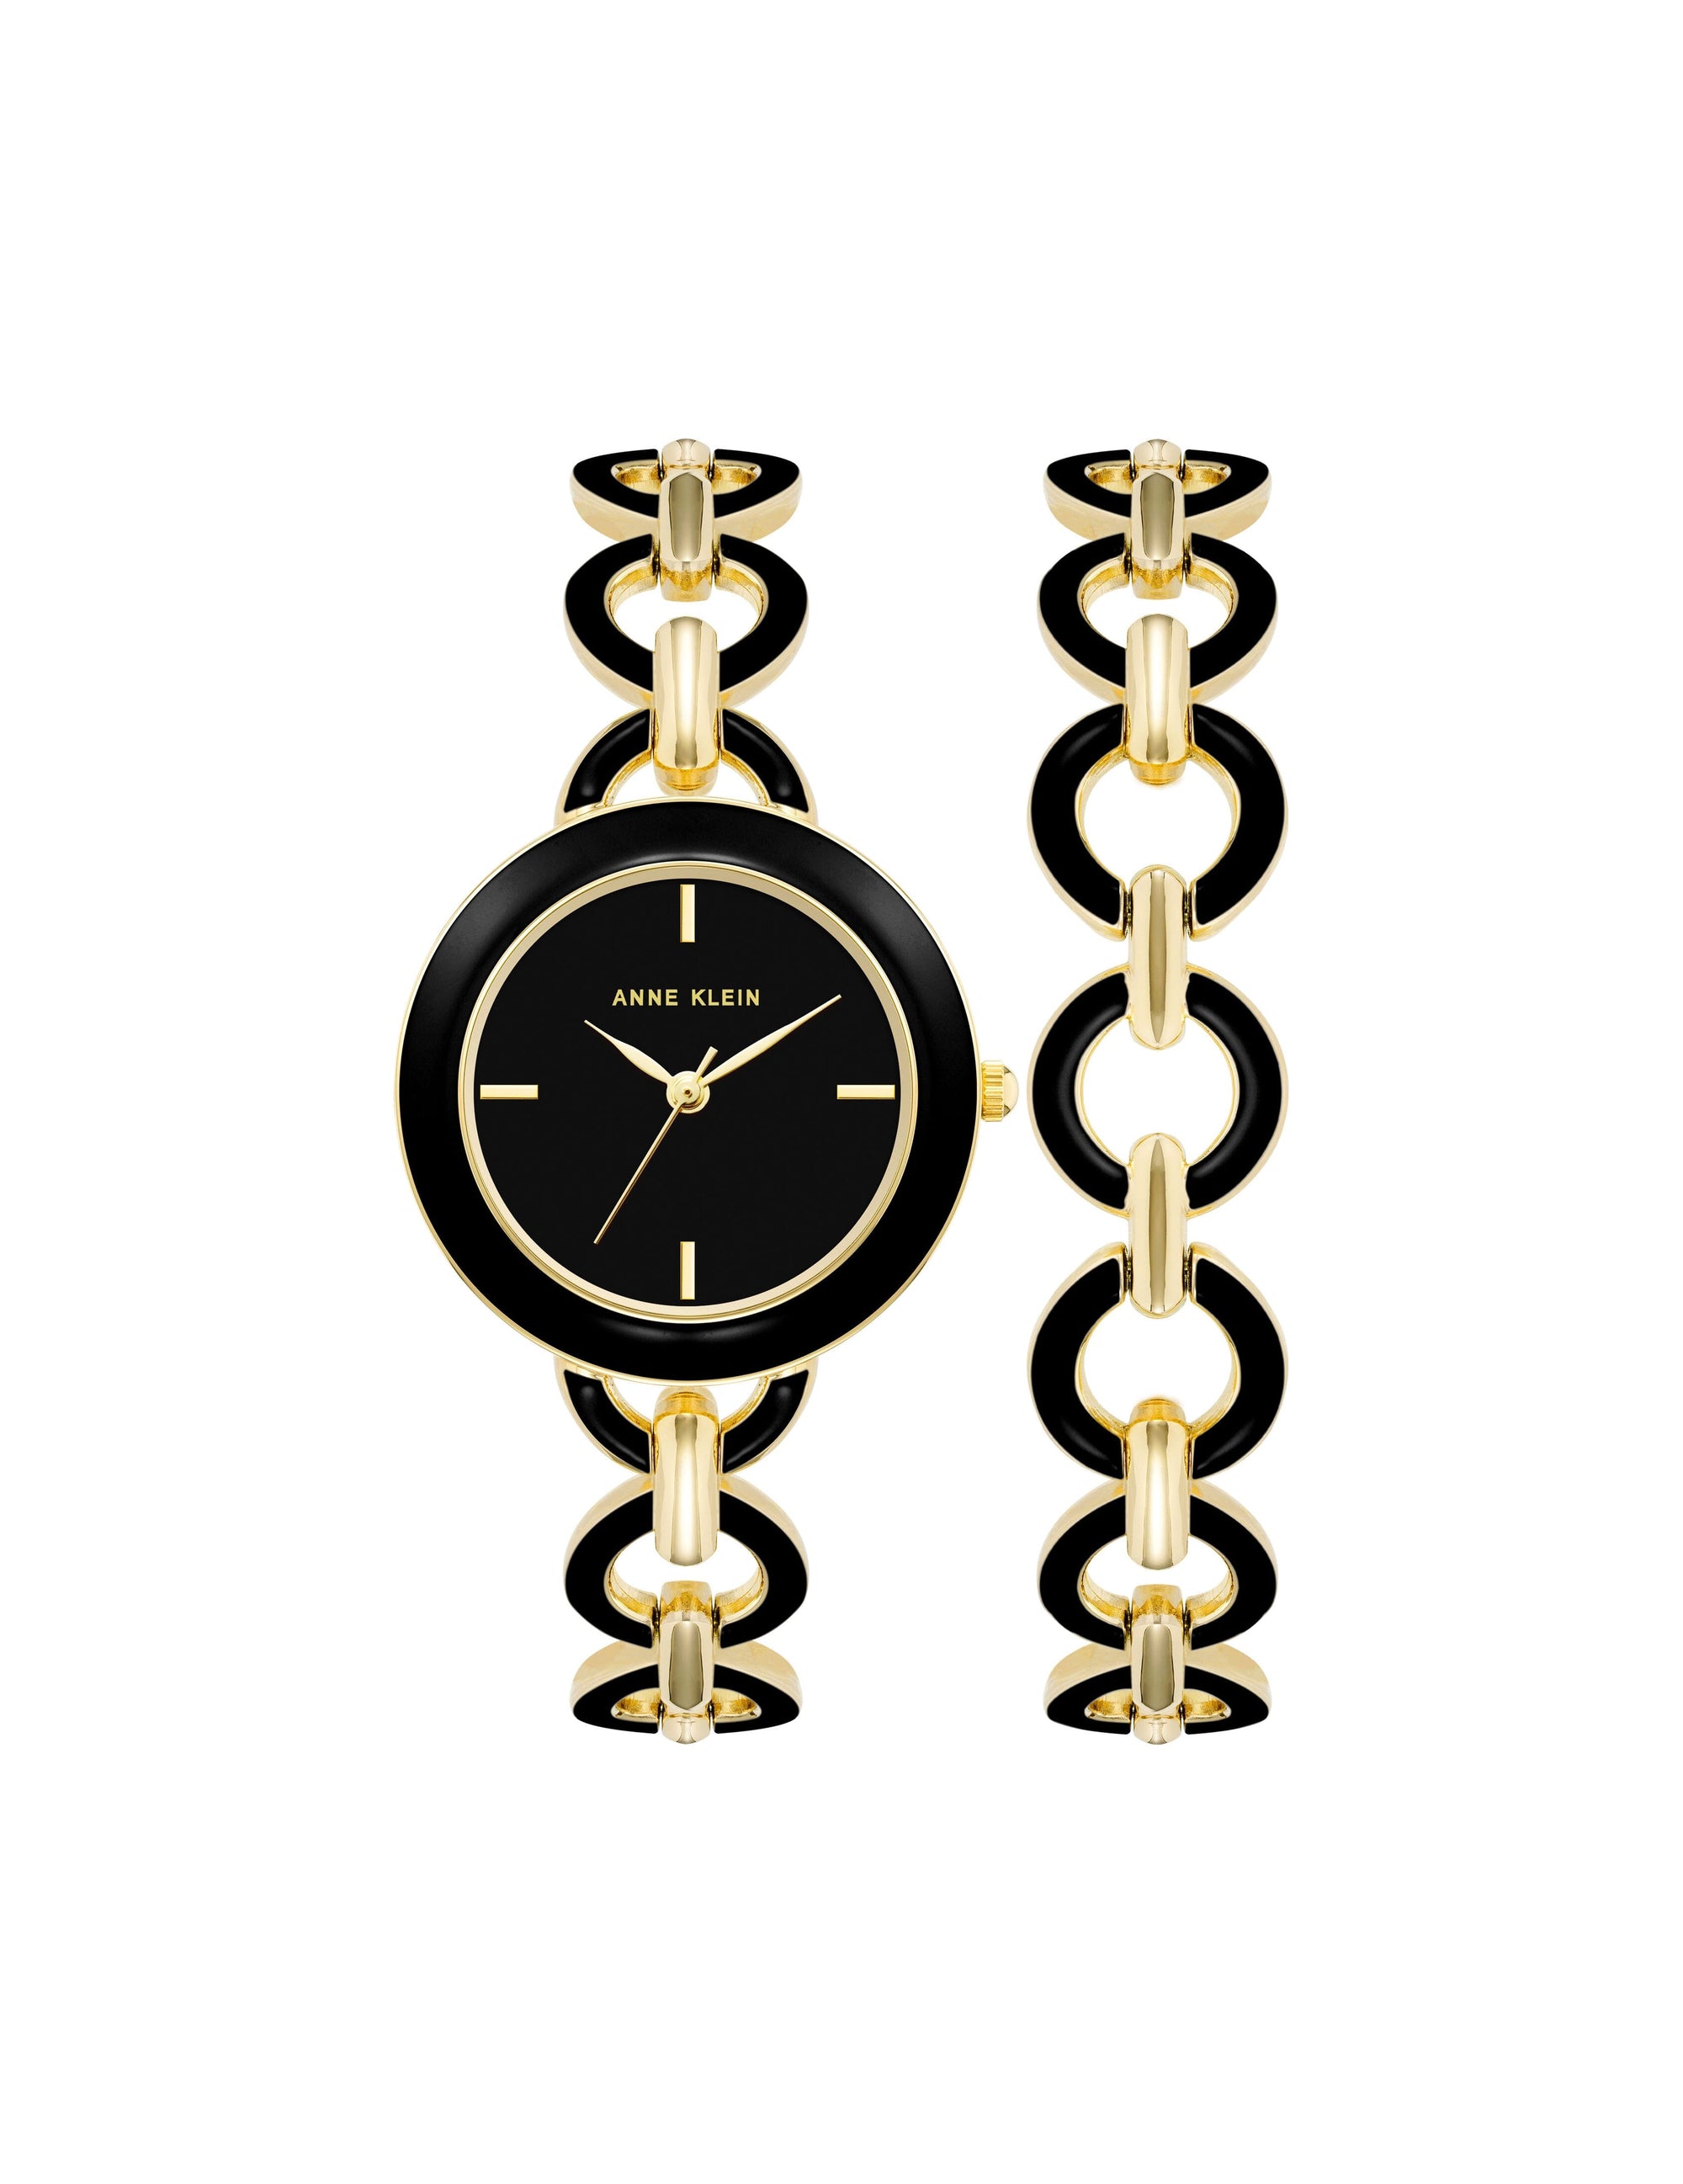 Anne Klein Black/ Gold Tone Boyfriend Circular Link Bracelet Watch Set